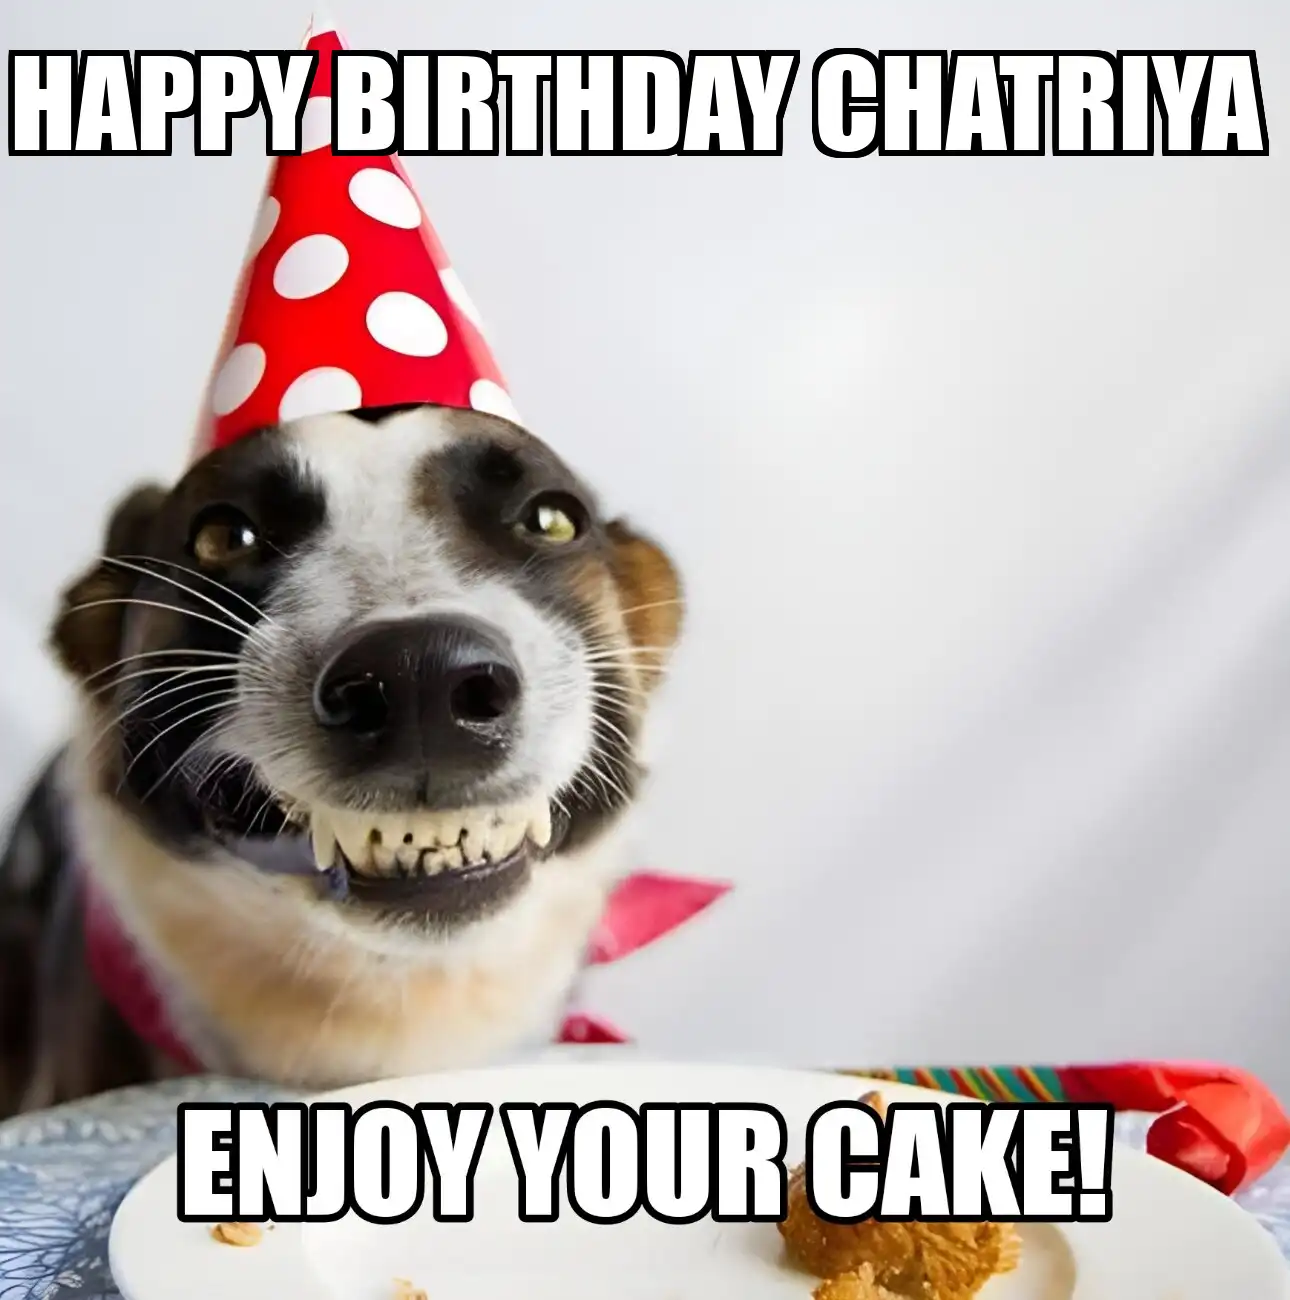 Happy Birthday Chatriya Enjoy Your Cake Dog Meme